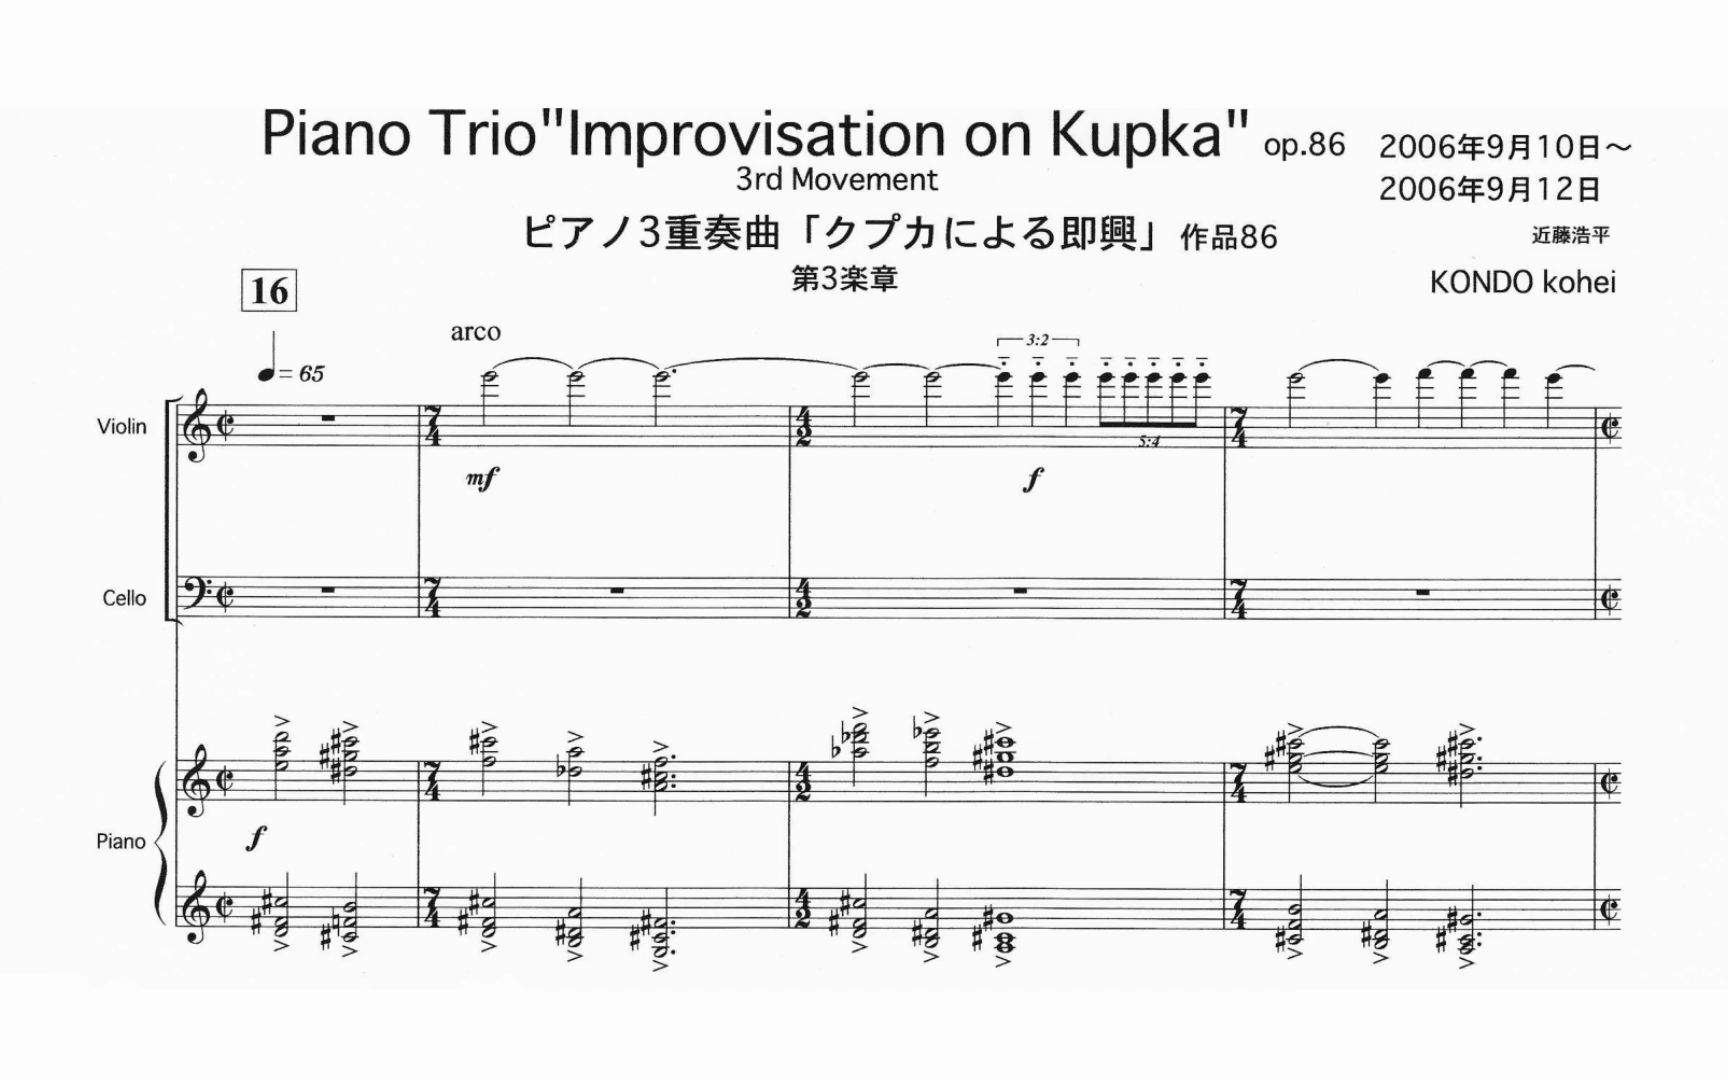 [图]Kohei Kondo (近藤浩平): 钢琴三重奏 "Kupka 的即兴曲"